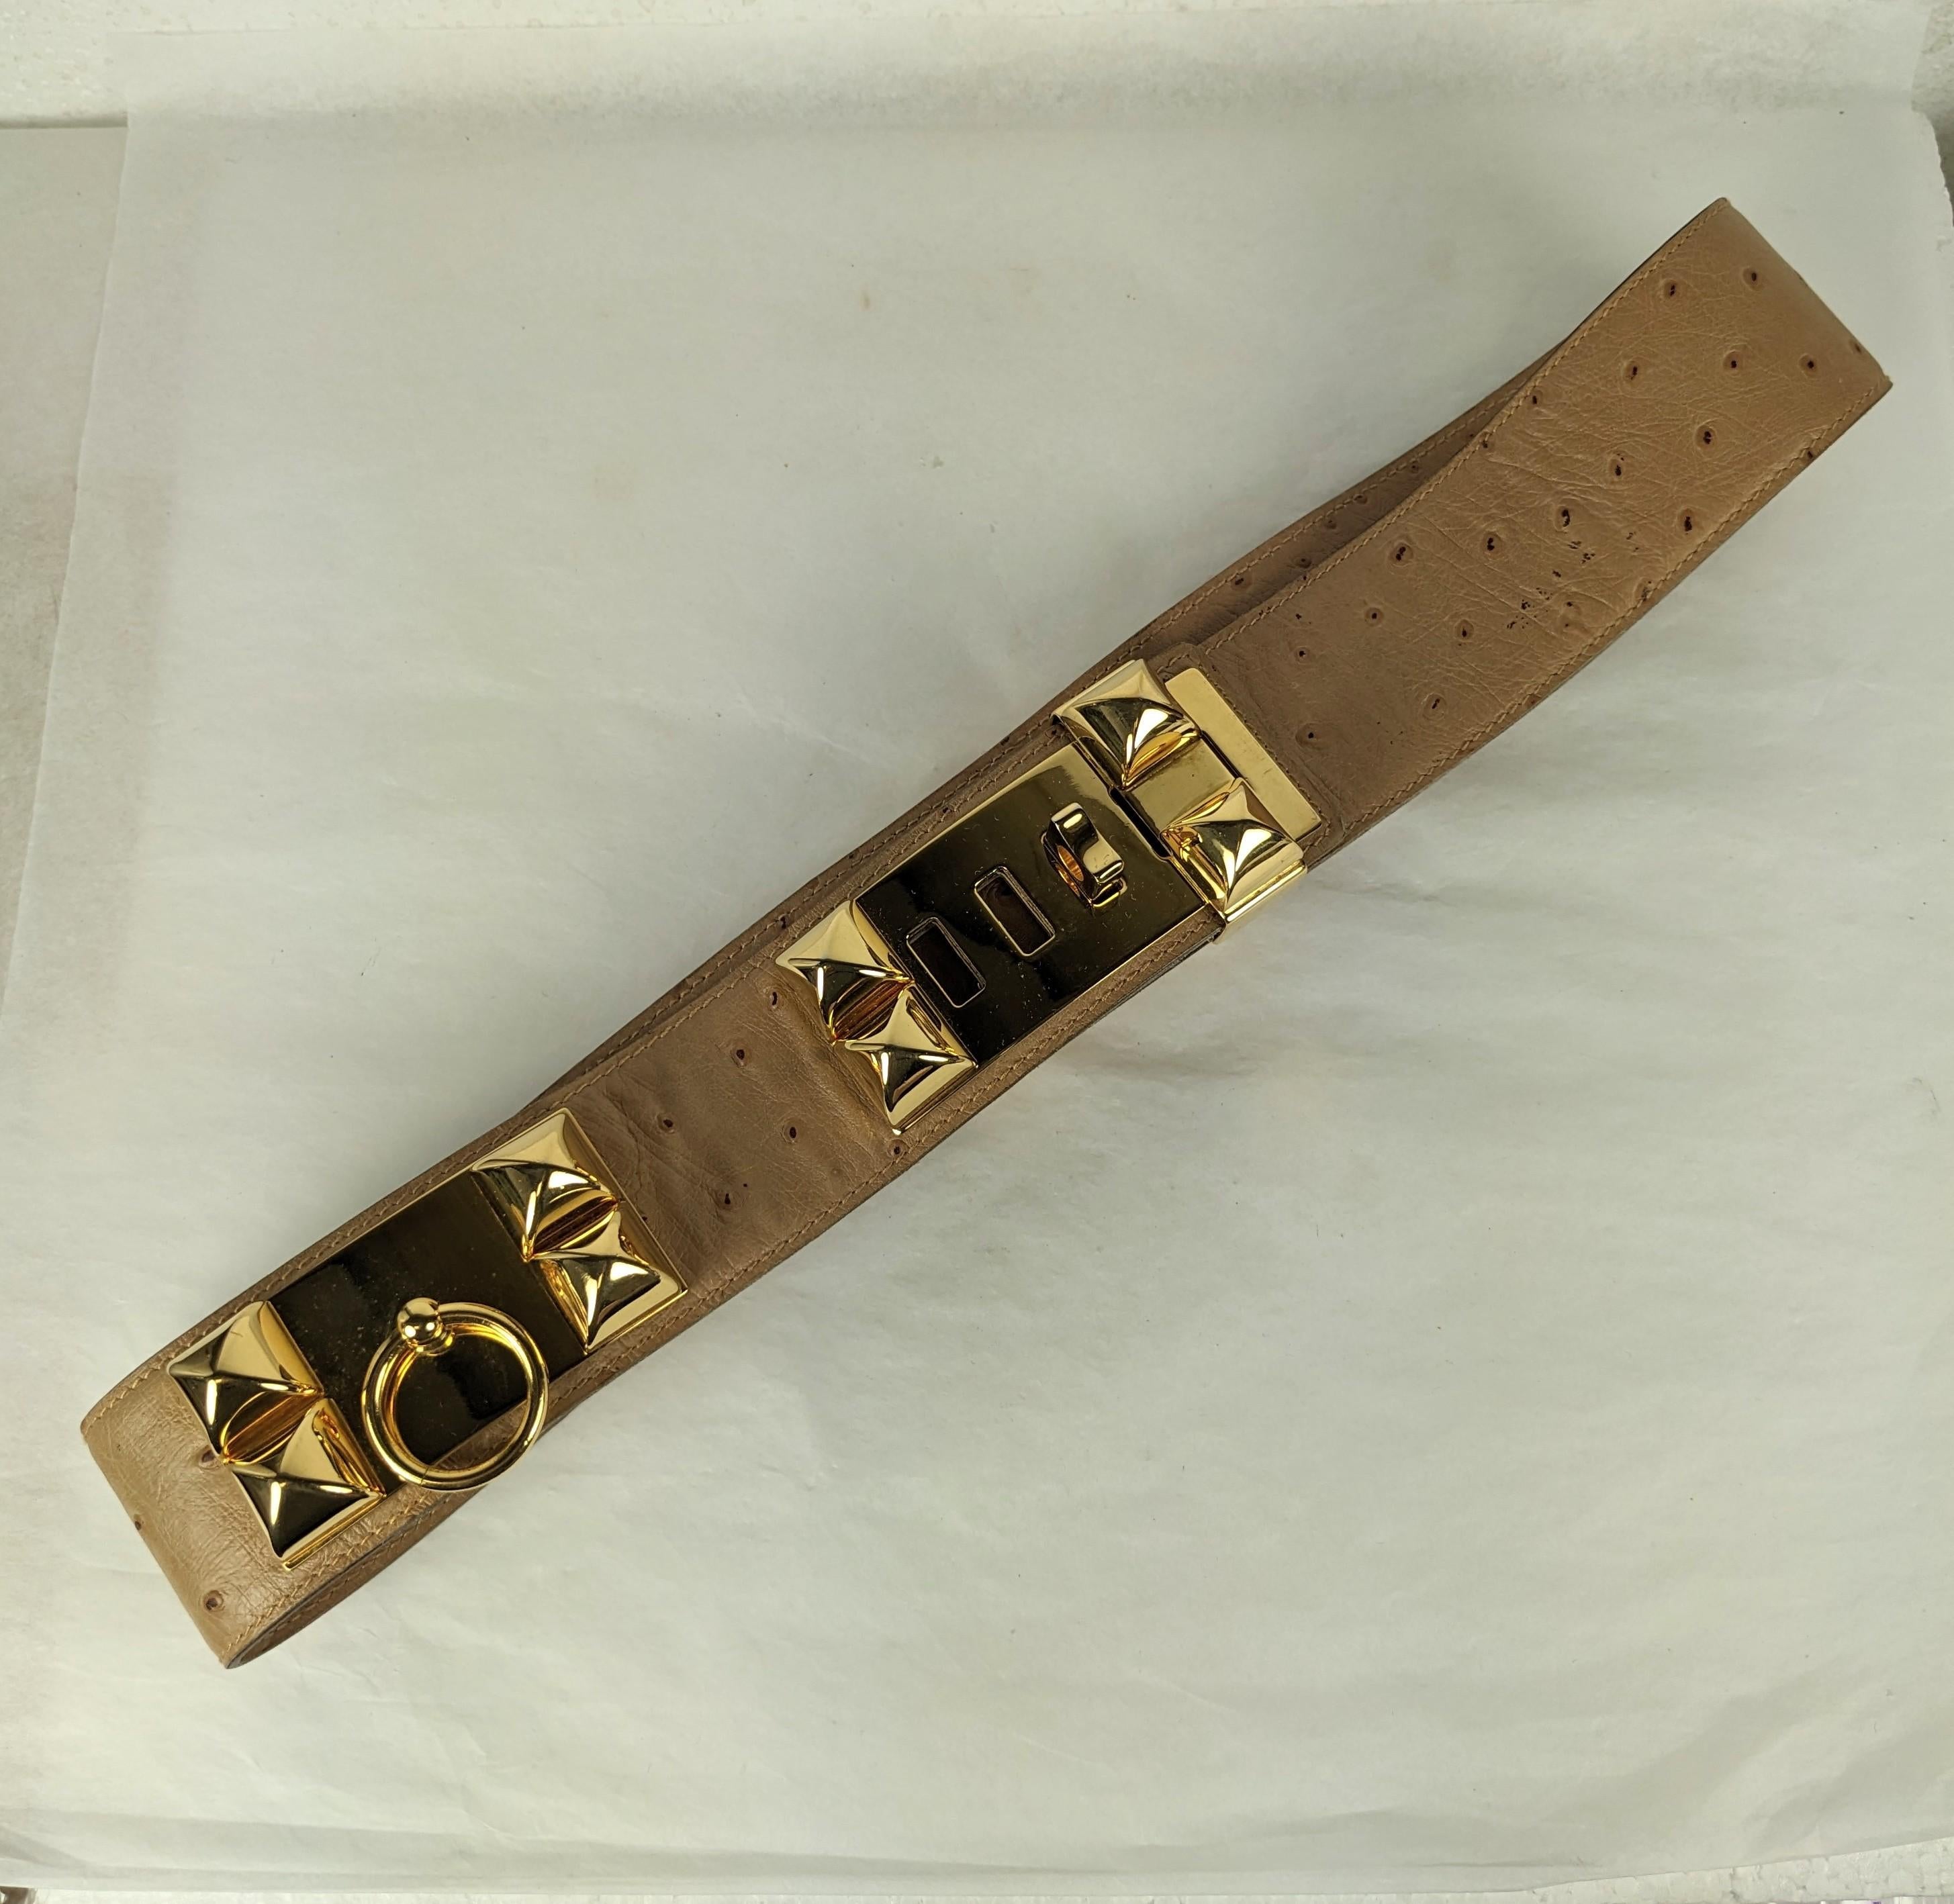 Authentique et élégante ceinture en autruche Collier de Chien Hermes des années 1980. Peau d'autruche exotique avec boucle de ceinture en palladium doré poli, rehaussée de clous.
Longueur totale 35